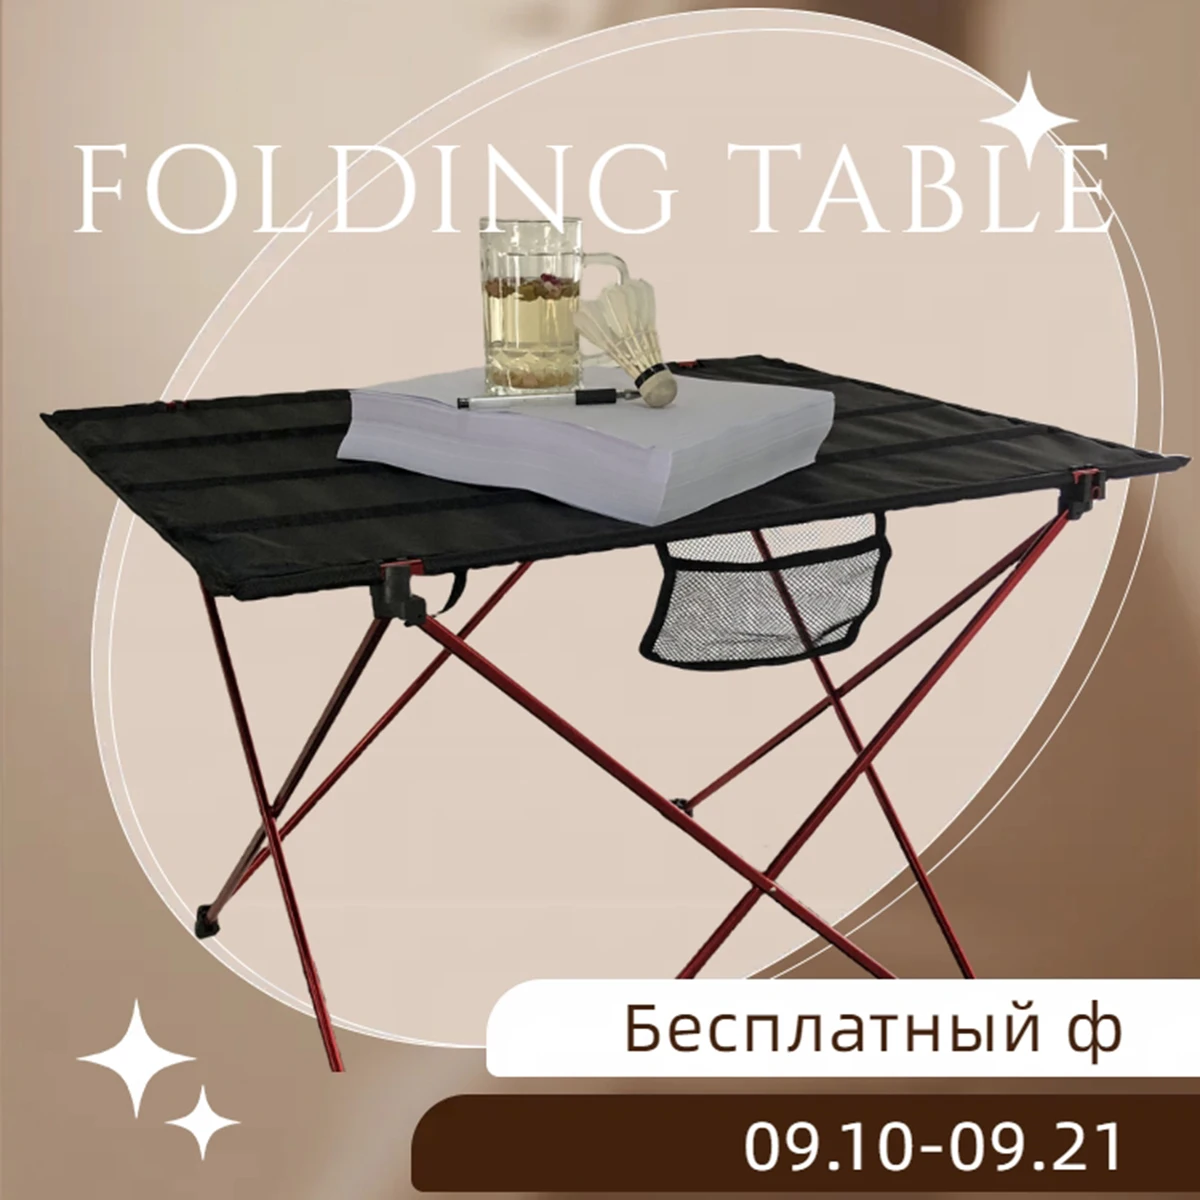 75 см Сверхлегкий Портативный складной стол из алюминиевого сплава, уличный стол для рыбалки, пикника, барбекю, Большой Красно-серый стол